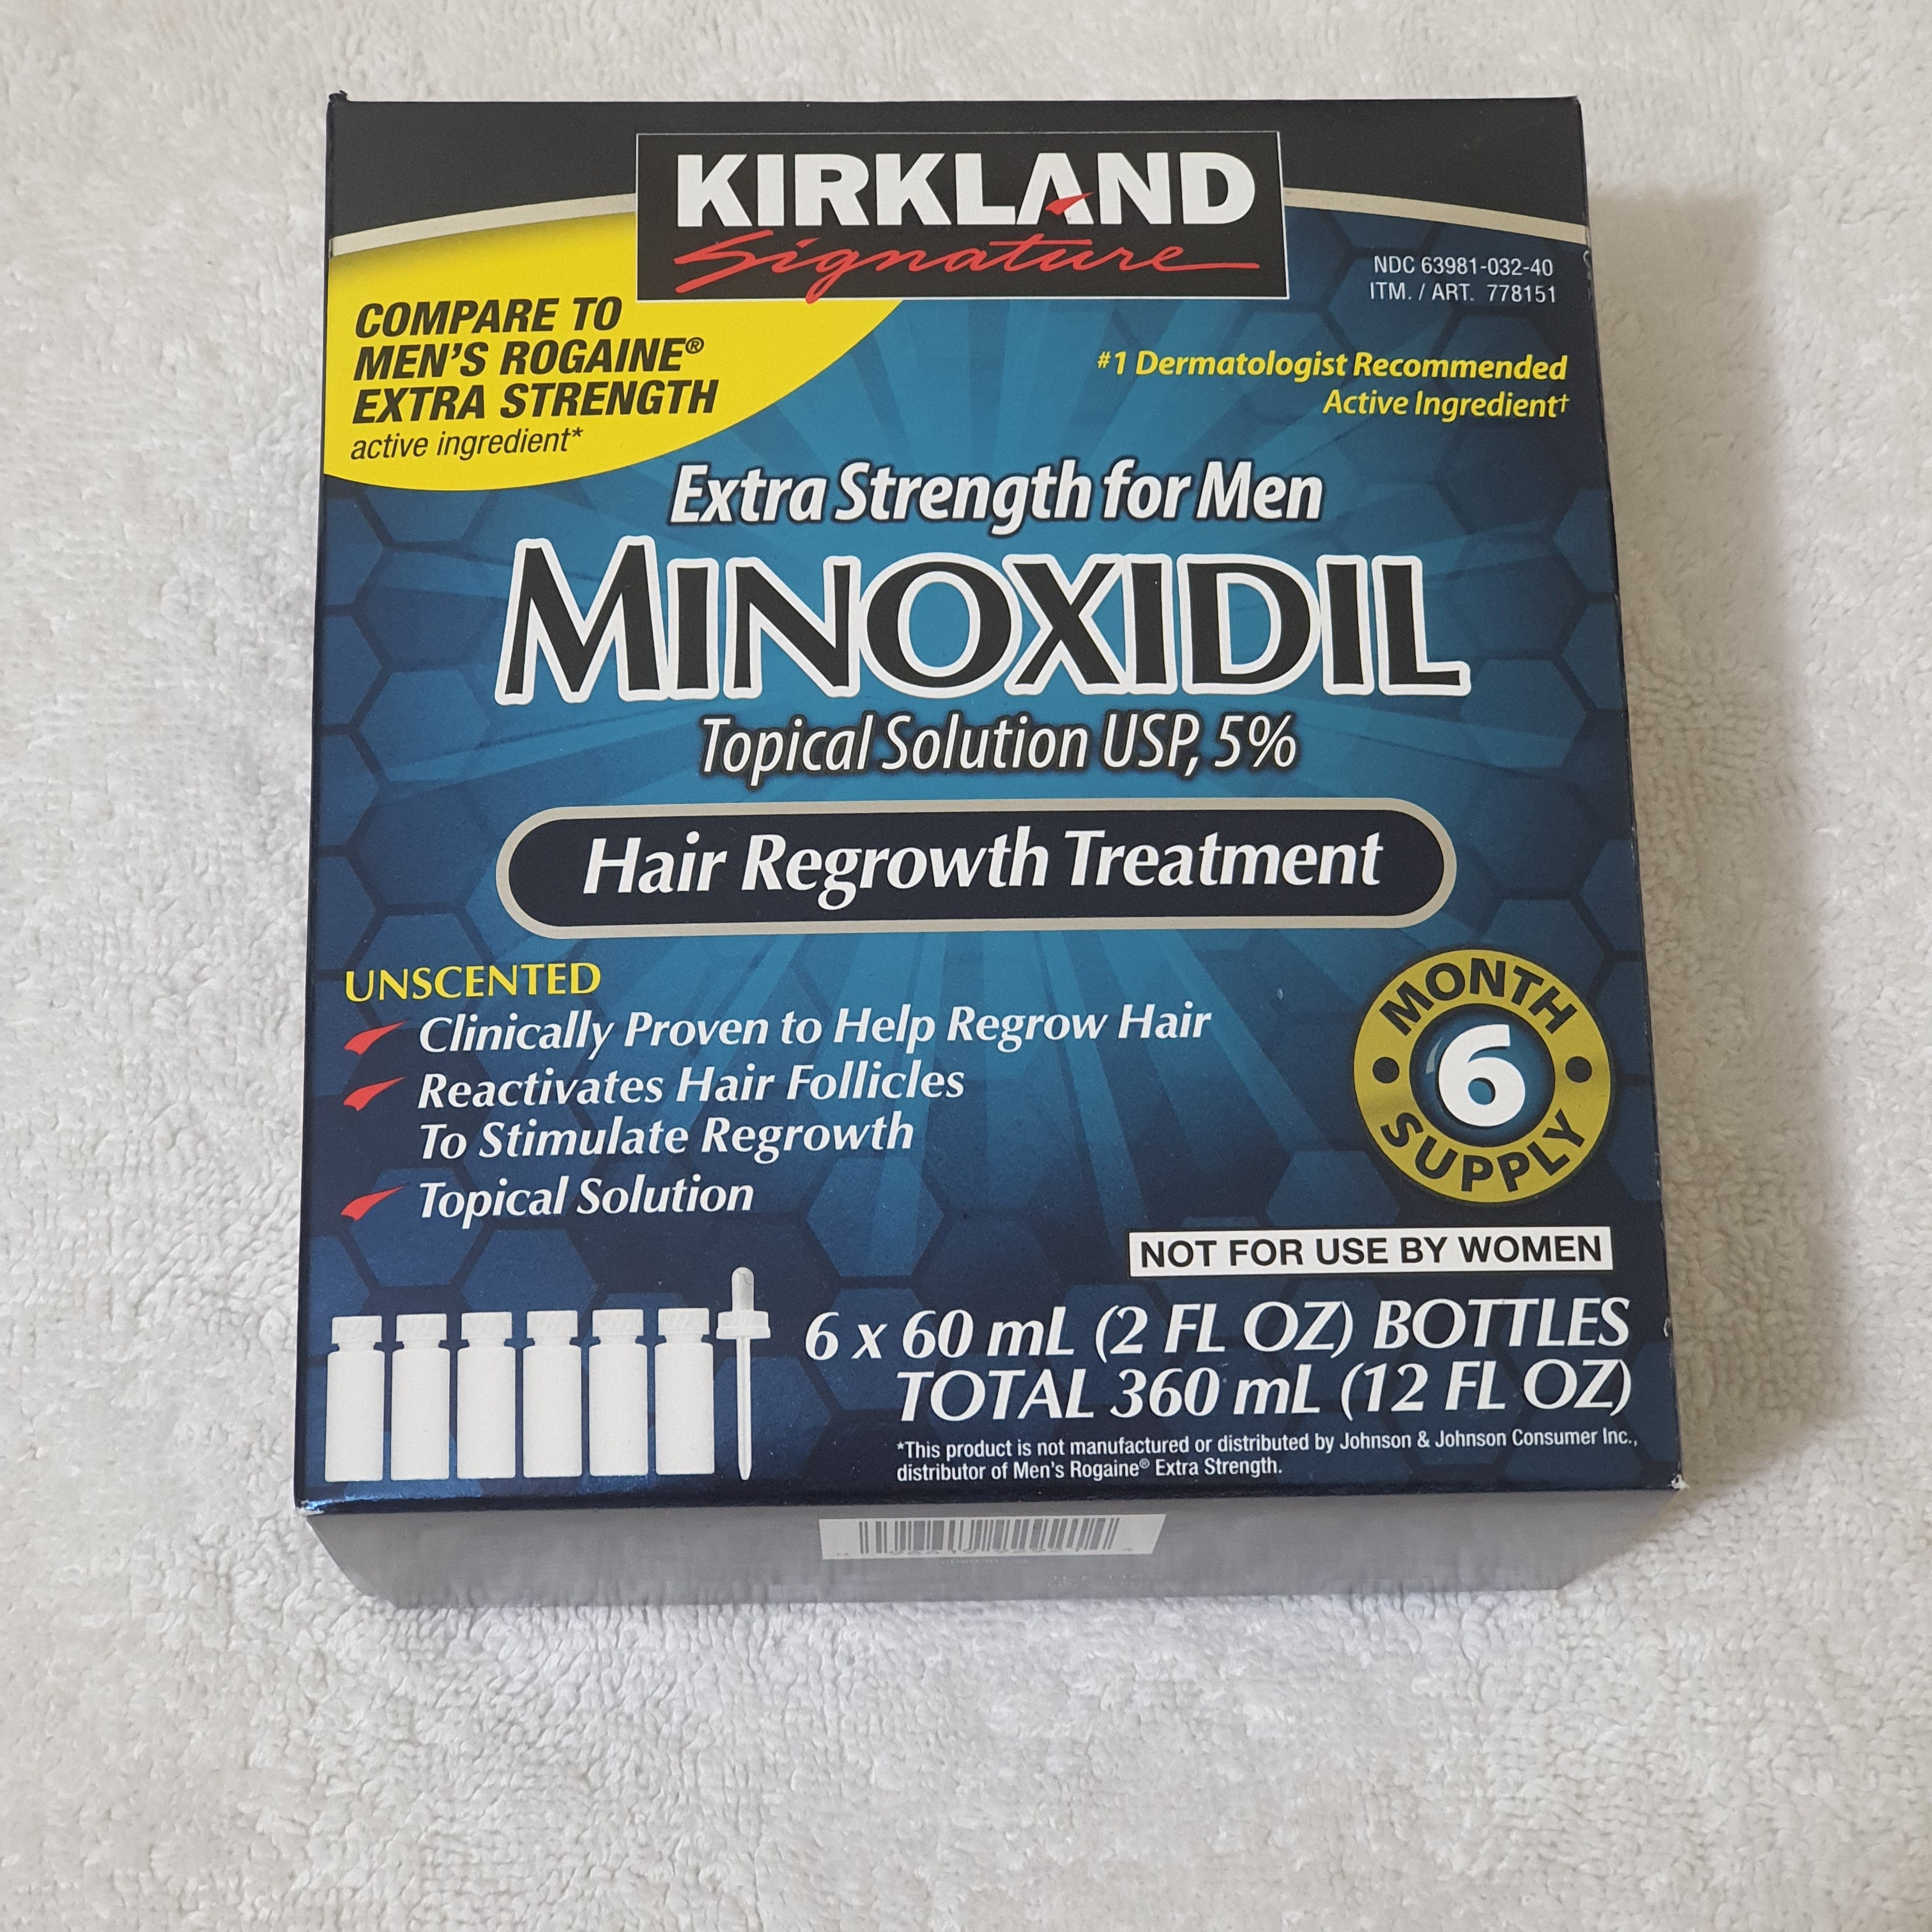 Minoxidil Kirkland 5% Hair Regrowth  مينوكسيديل كركلاند لمحاربة الصلع وانبات الشعر في اللحية